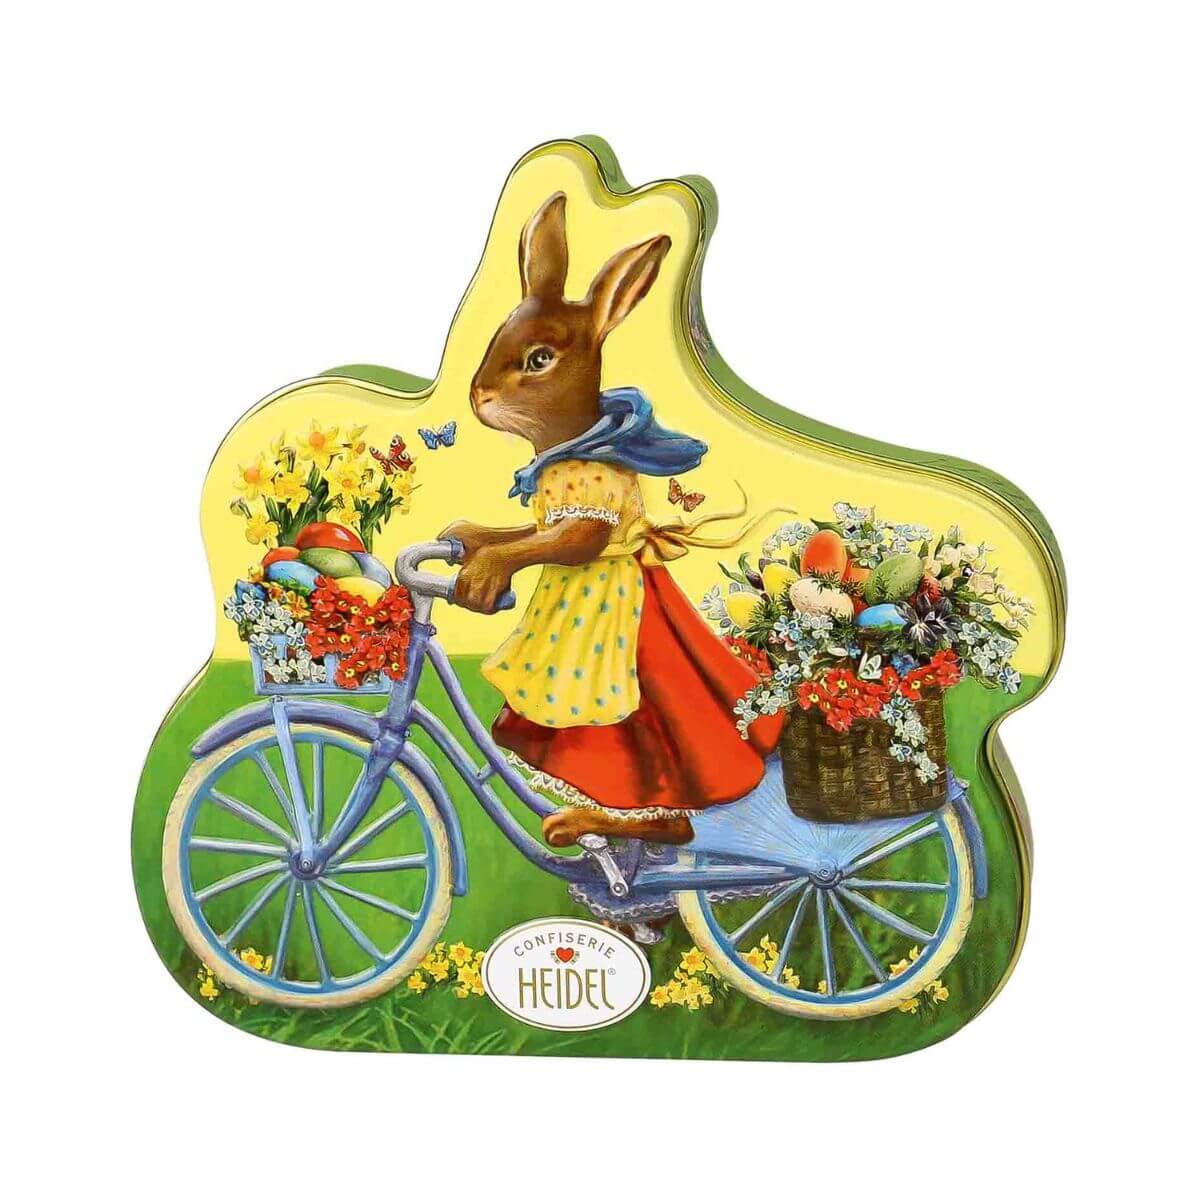 Heidel Easter Nostalgia Chocolates Bicycle Tin 108g